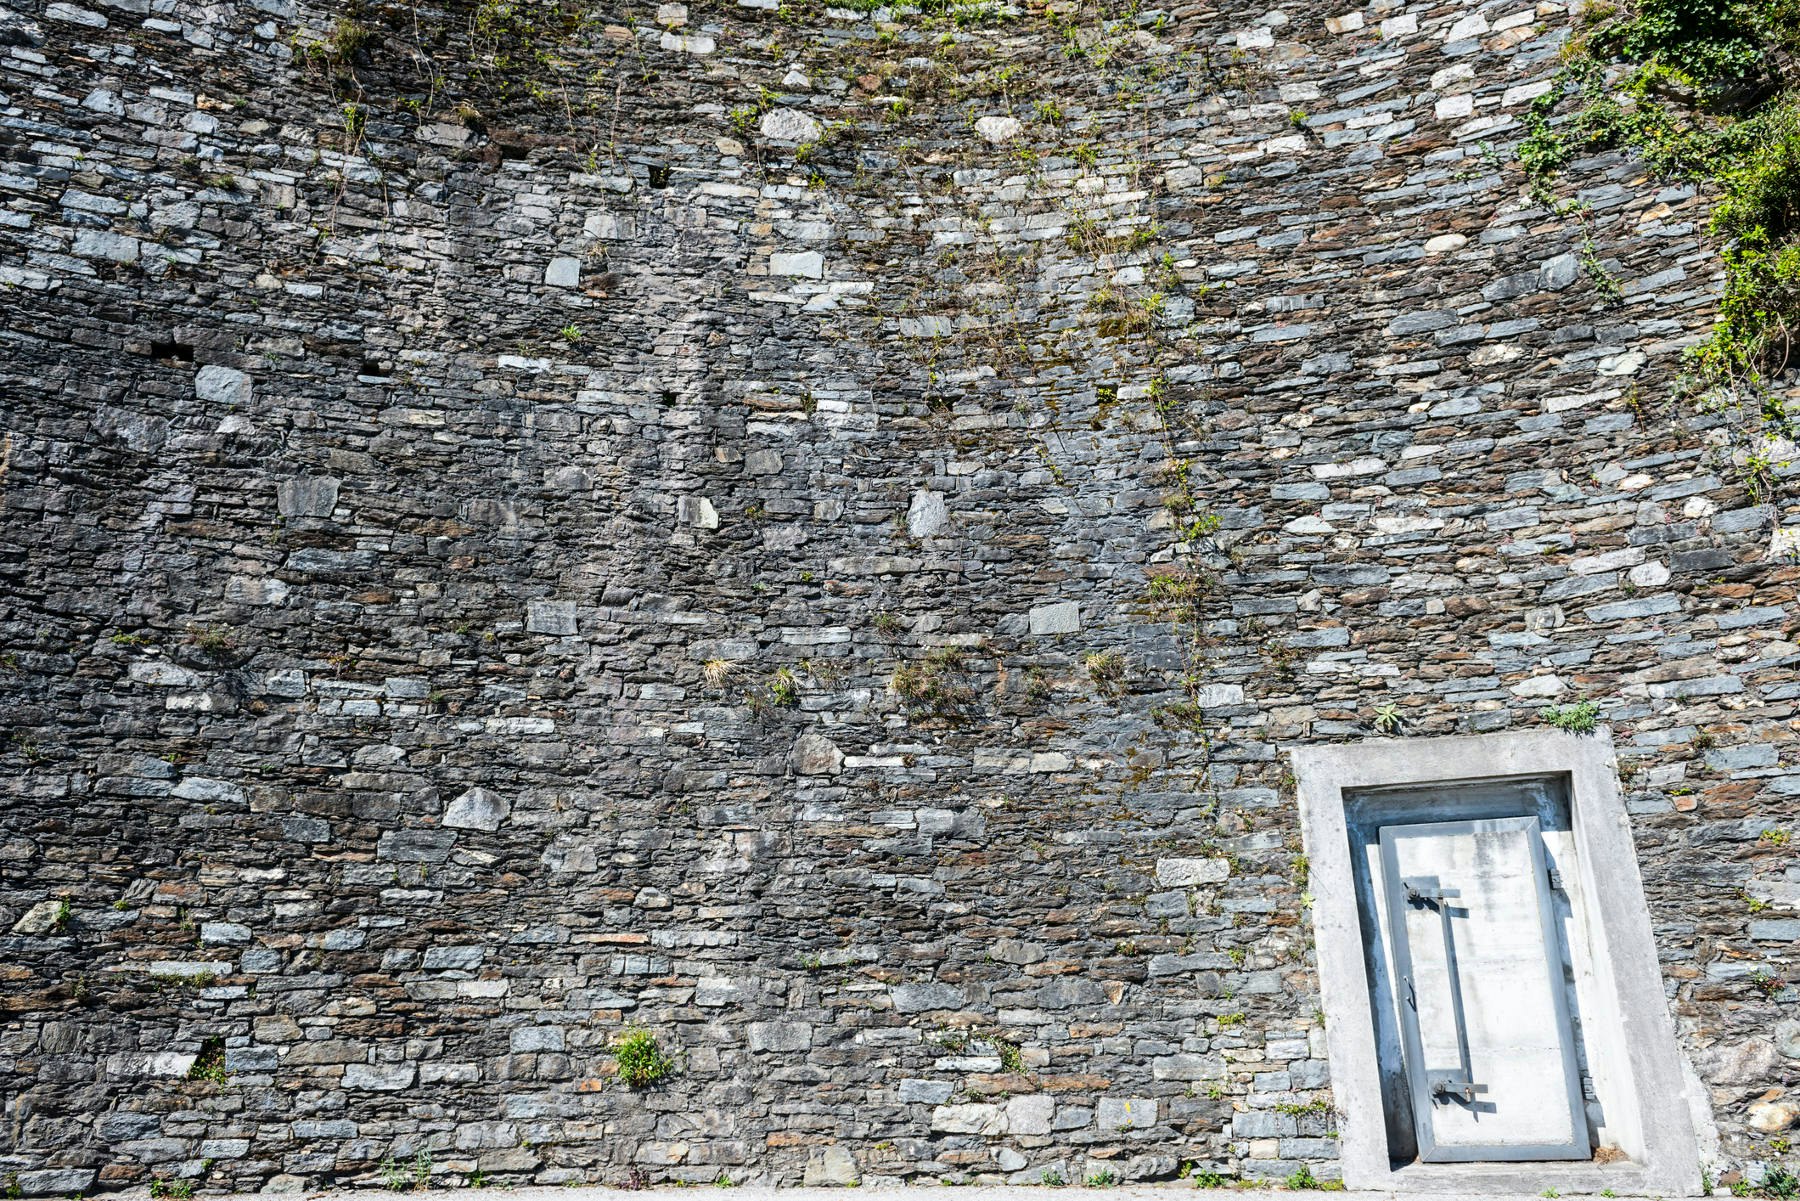 Bunker door and stone wall in Ticino, Switzerland.